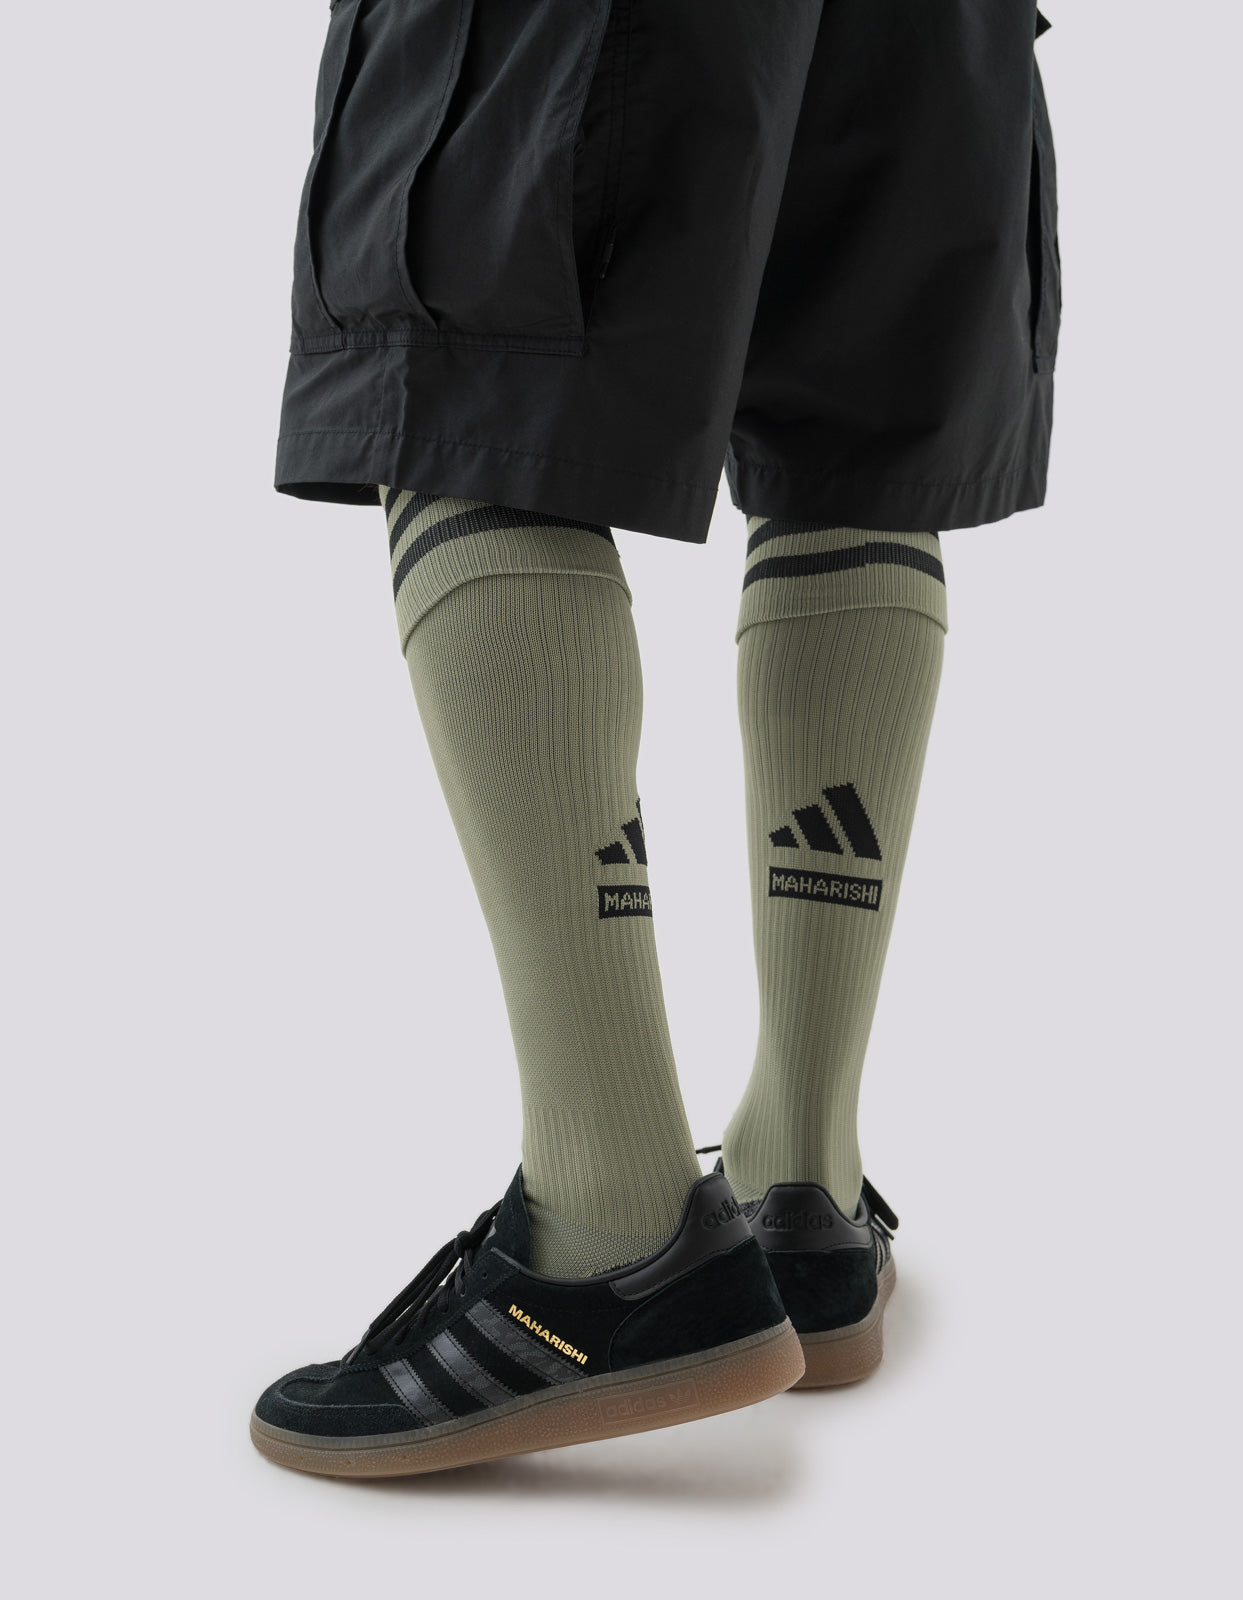 Maharishi Arsenal FC Socks